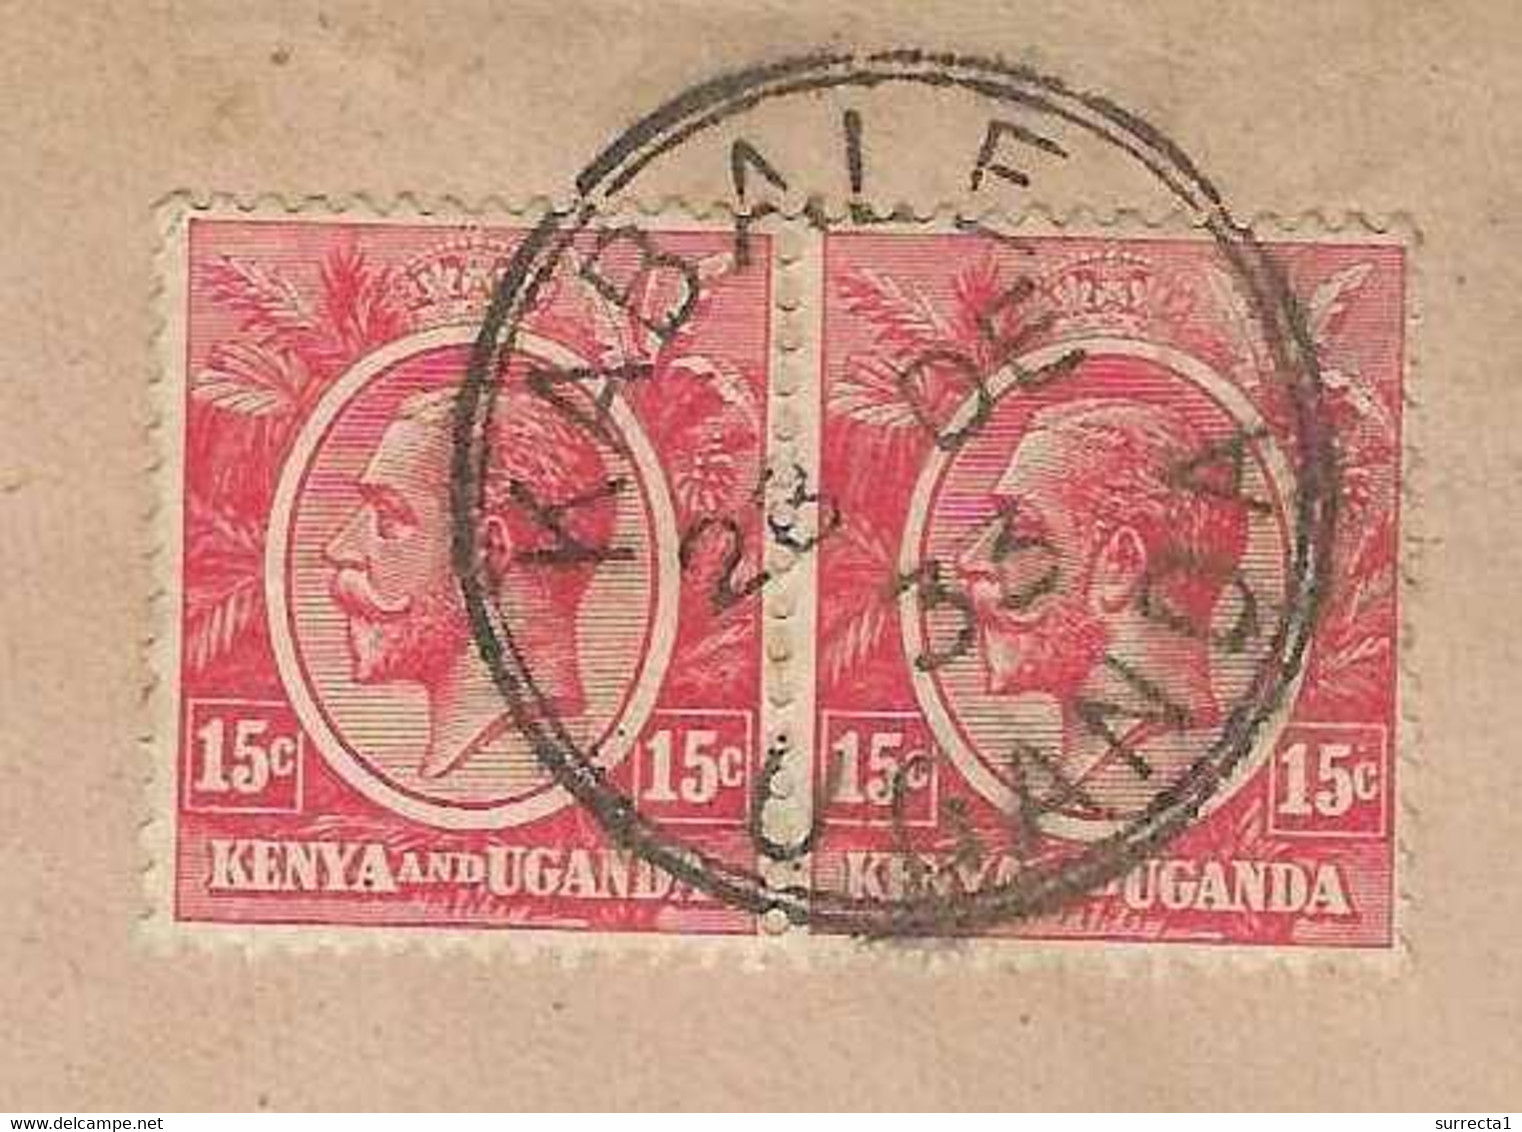 28 Déc 1933 / Enveloppe Uganda Kenya / Beau Cachet Double Cercle KABALE Uganda / Sur Enveloppe Illustrée Sarda Besançon - Kenya & Ouganda